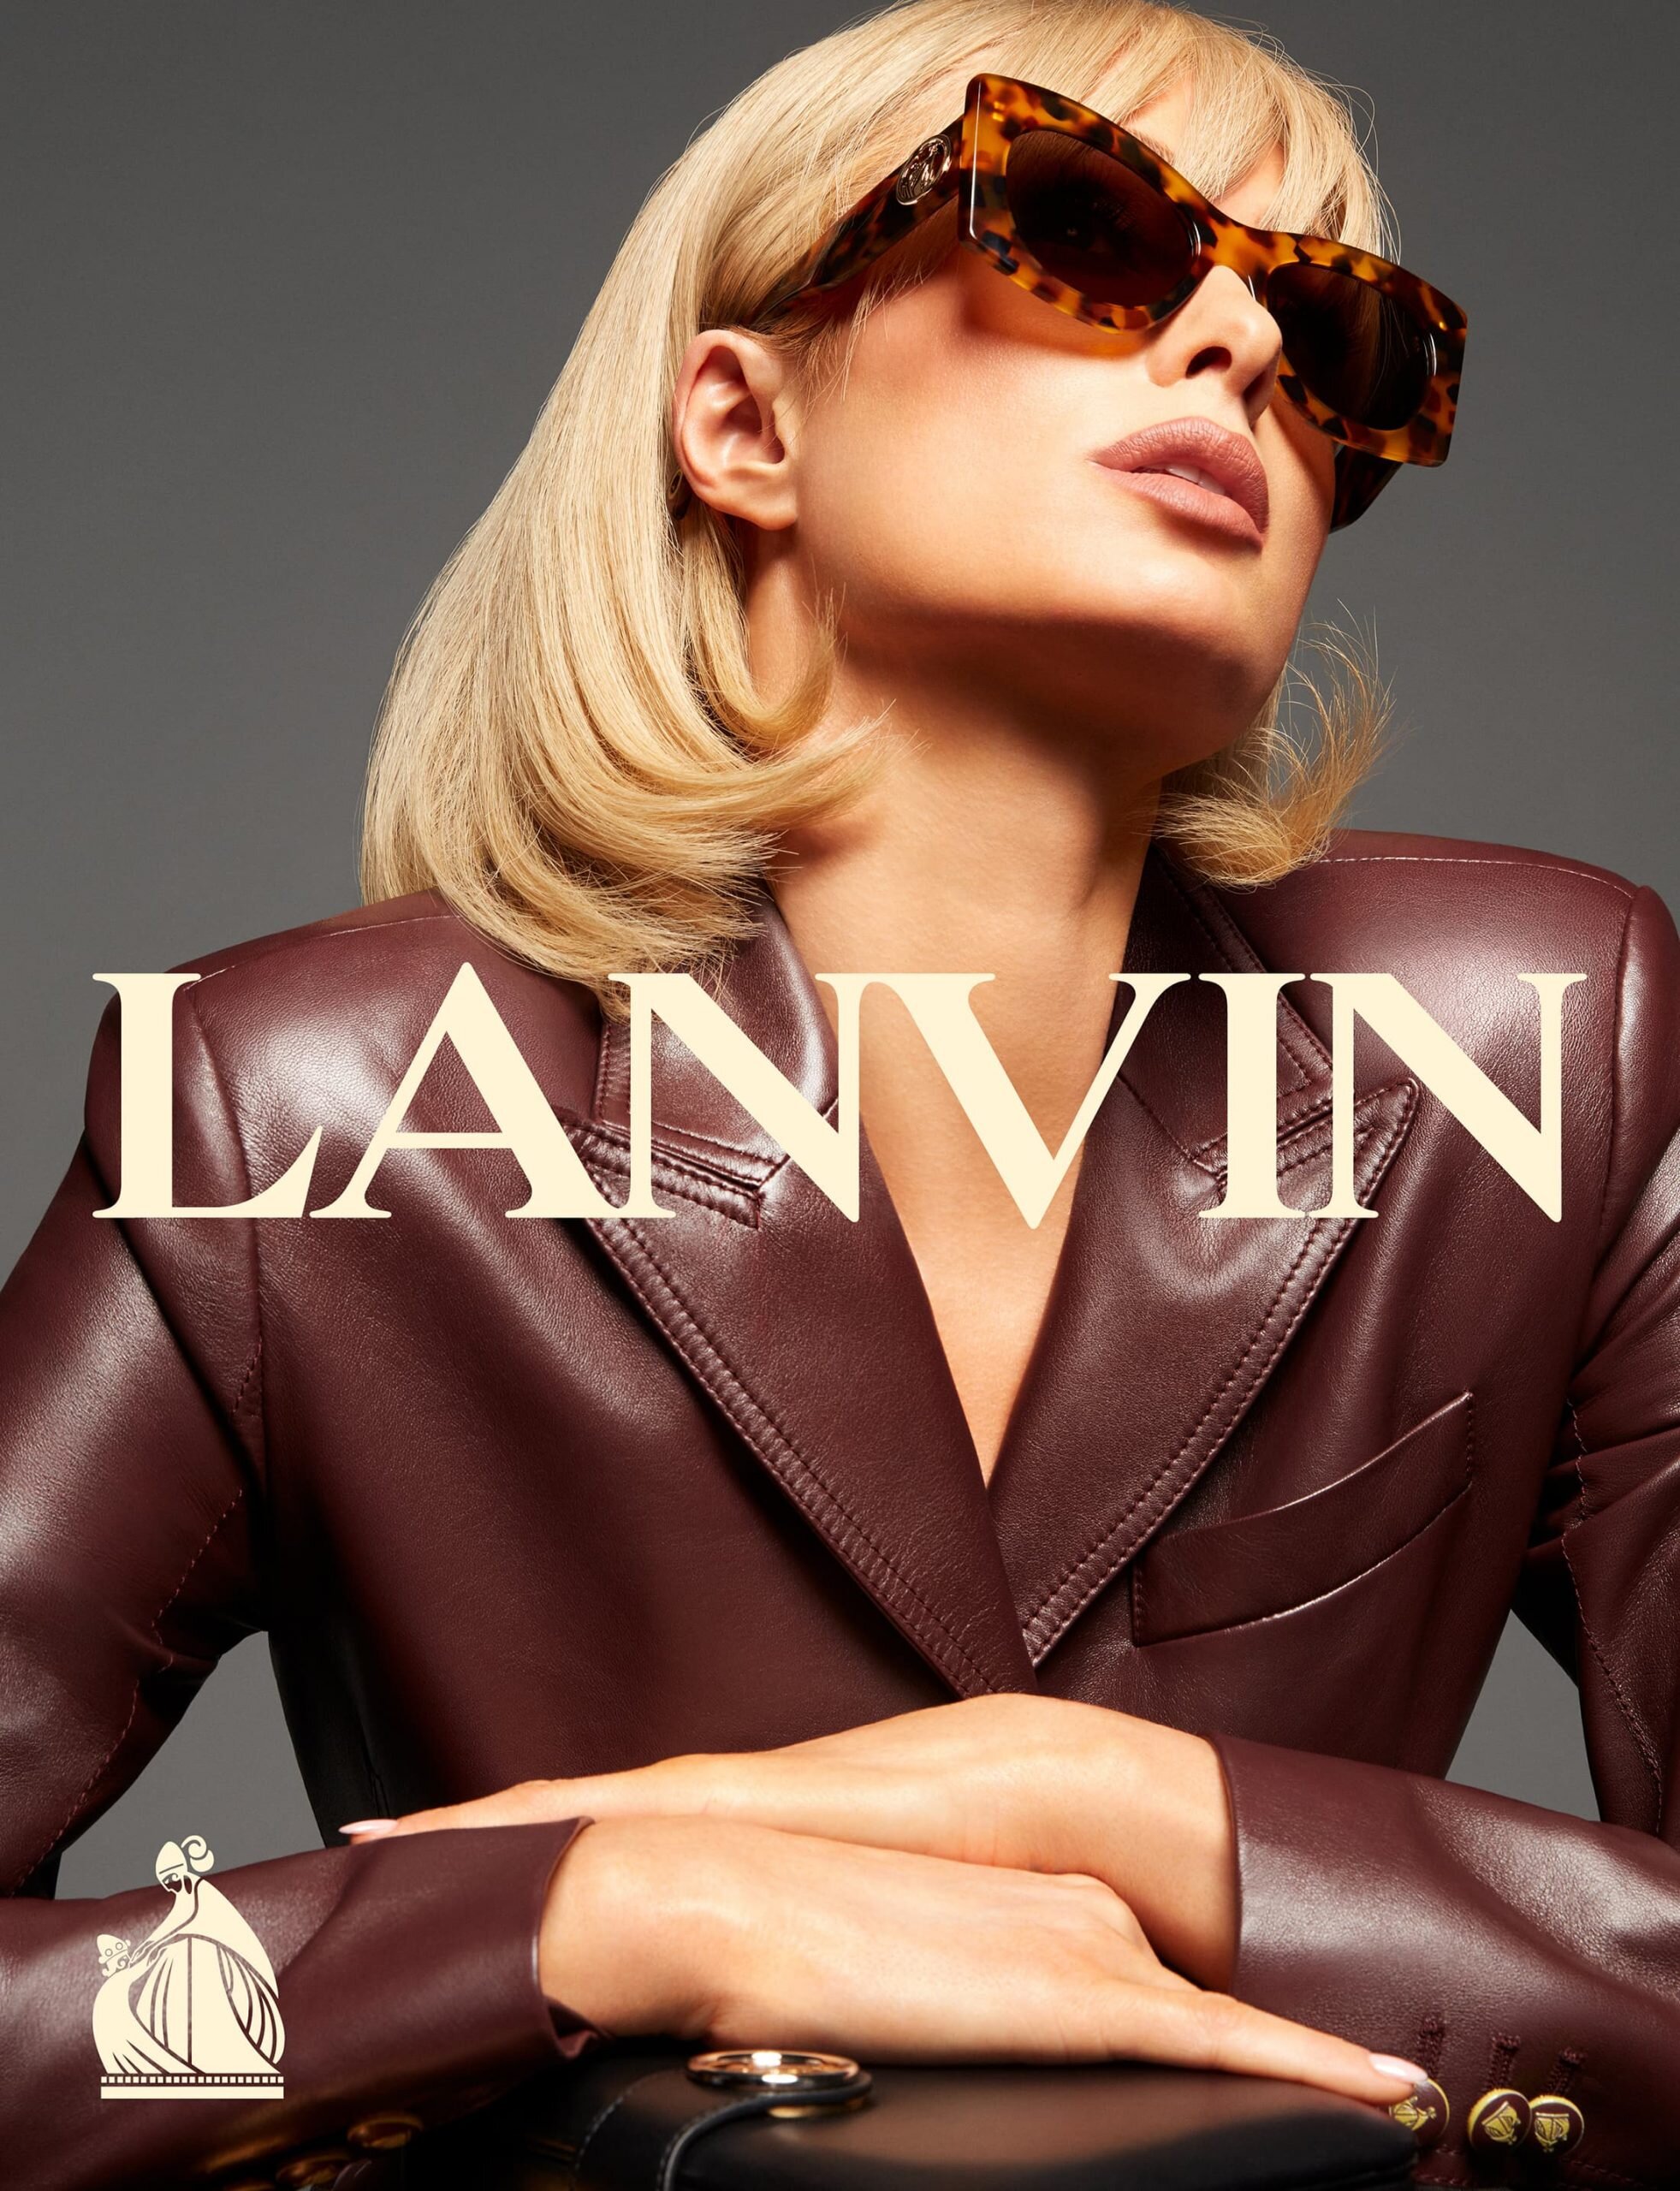 Paris Hilton by Mert Marcus Lanvin Sp 2021 Campaign (3).jpg